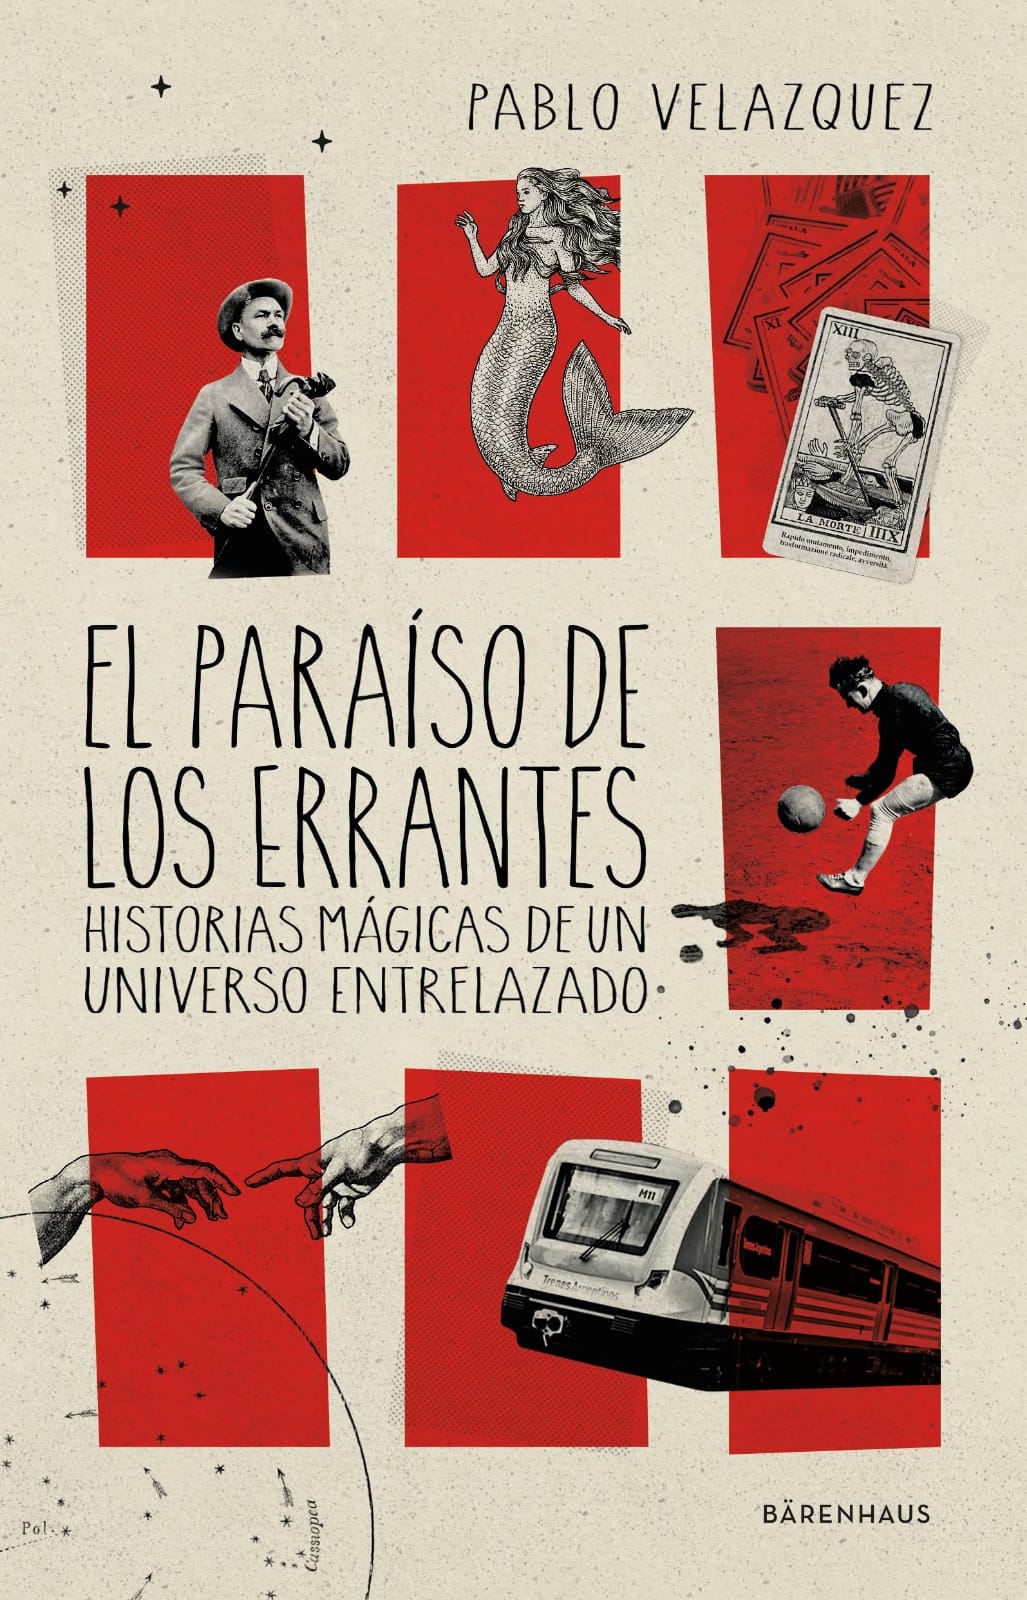 tapa del libro "El paraíso de los errantes", de Pablo Velazquez